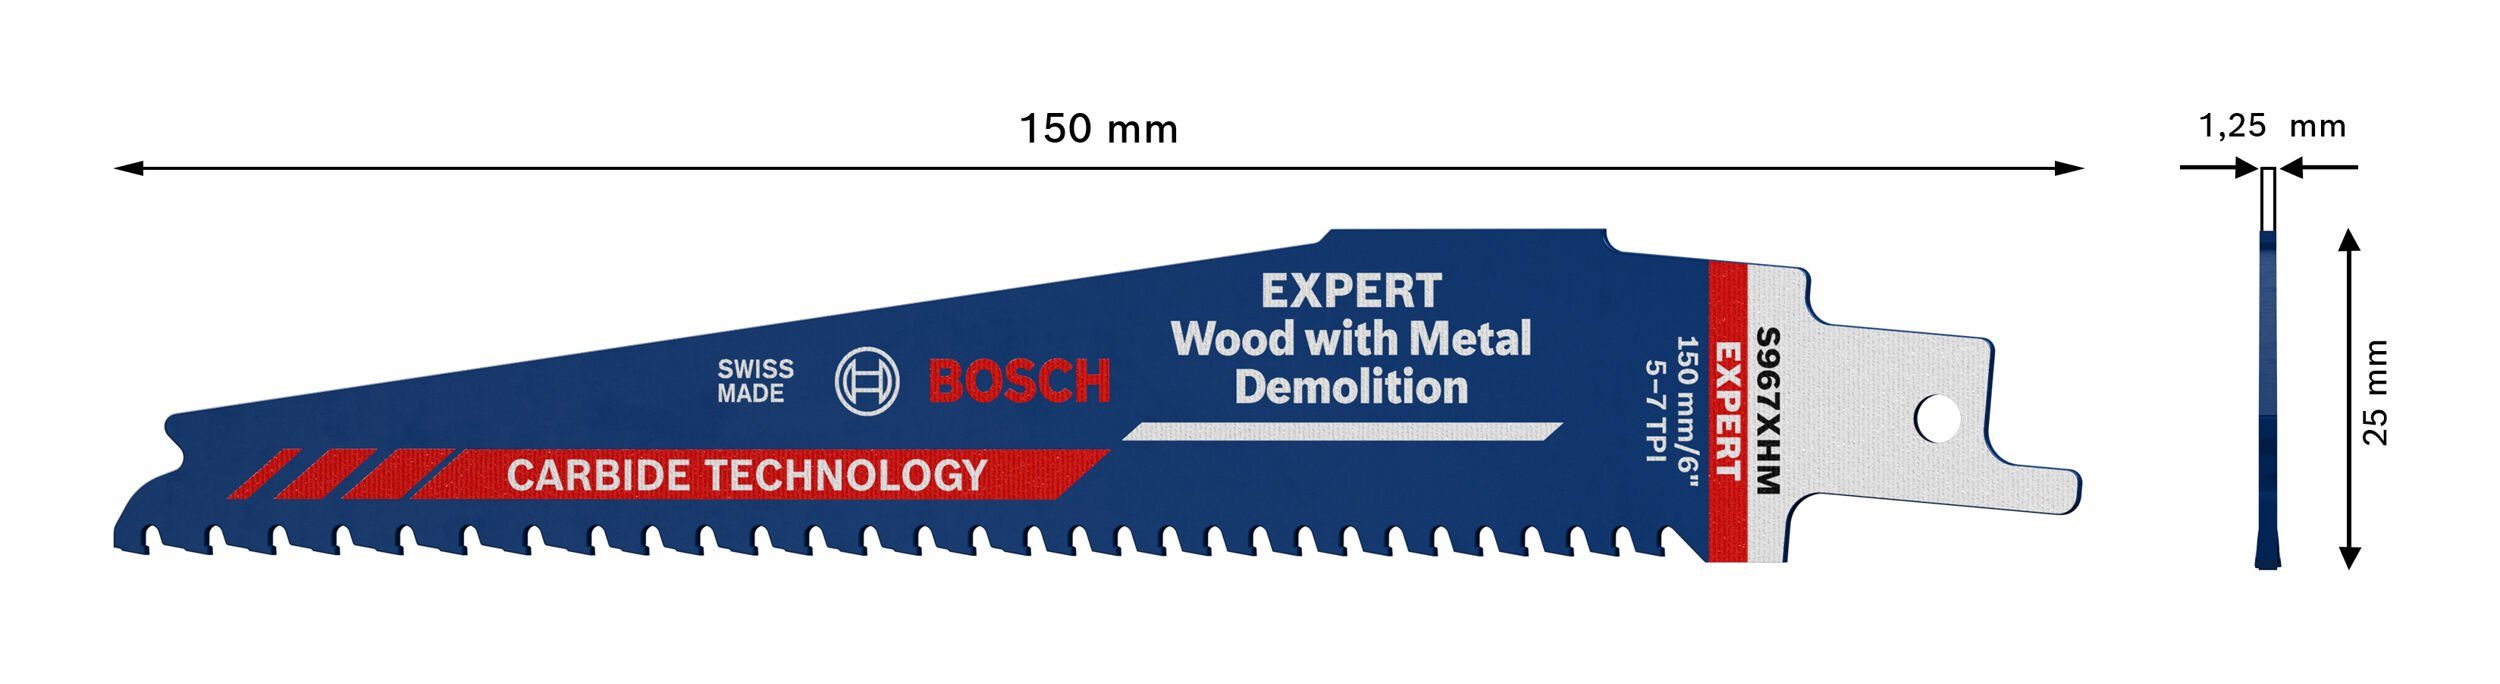 XHM Demolition, S 967 for Wood Demolition with Expert Endurance and Metal Expert Wood Säbelsägeblatt BOSCH Metal